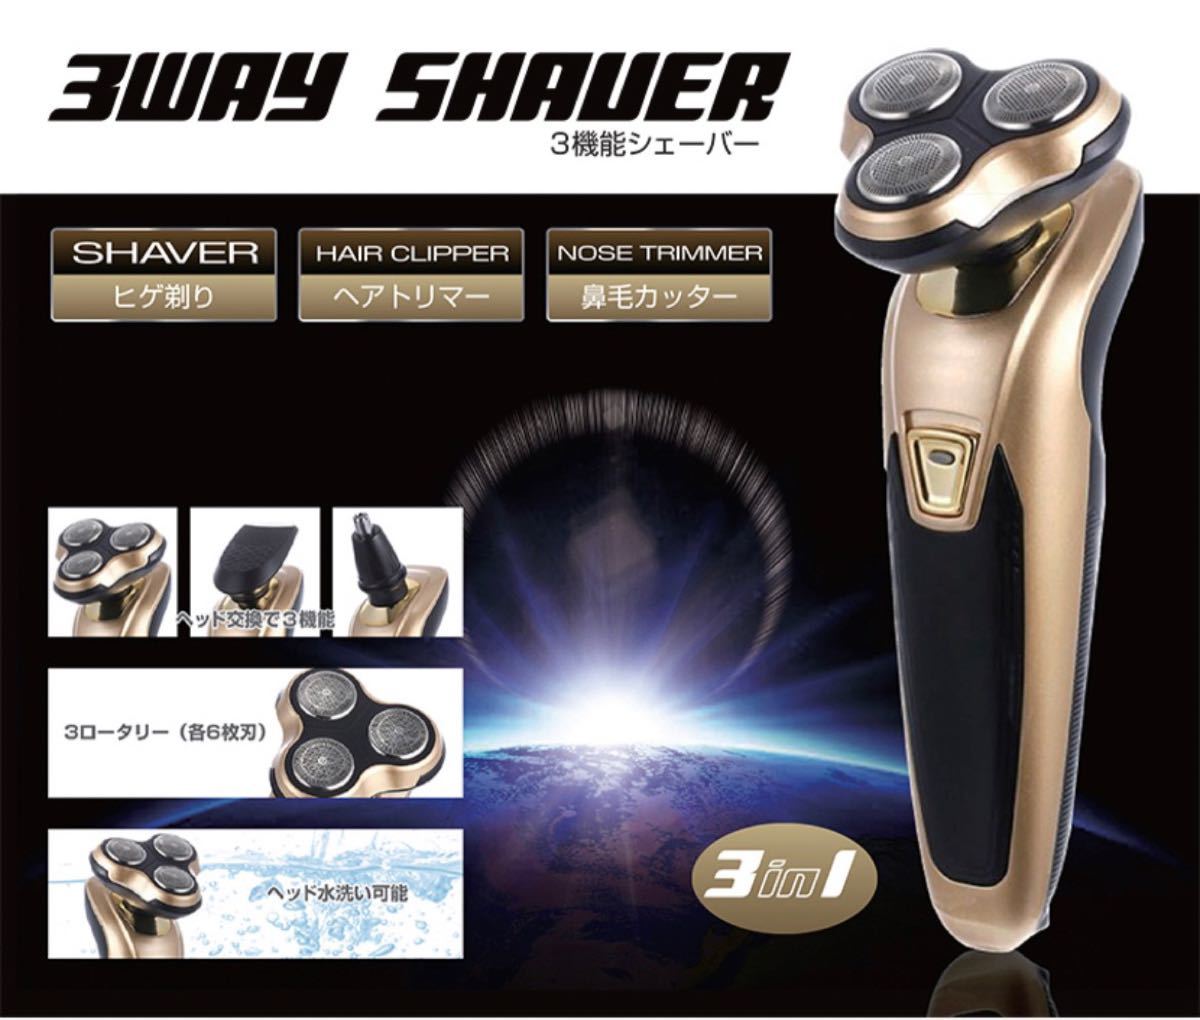 メンズシェーバー 電気シェーバー 充電式 フィリップス 風 3way 水洗い可能 ひげそり トリマー 鼻毛カッター